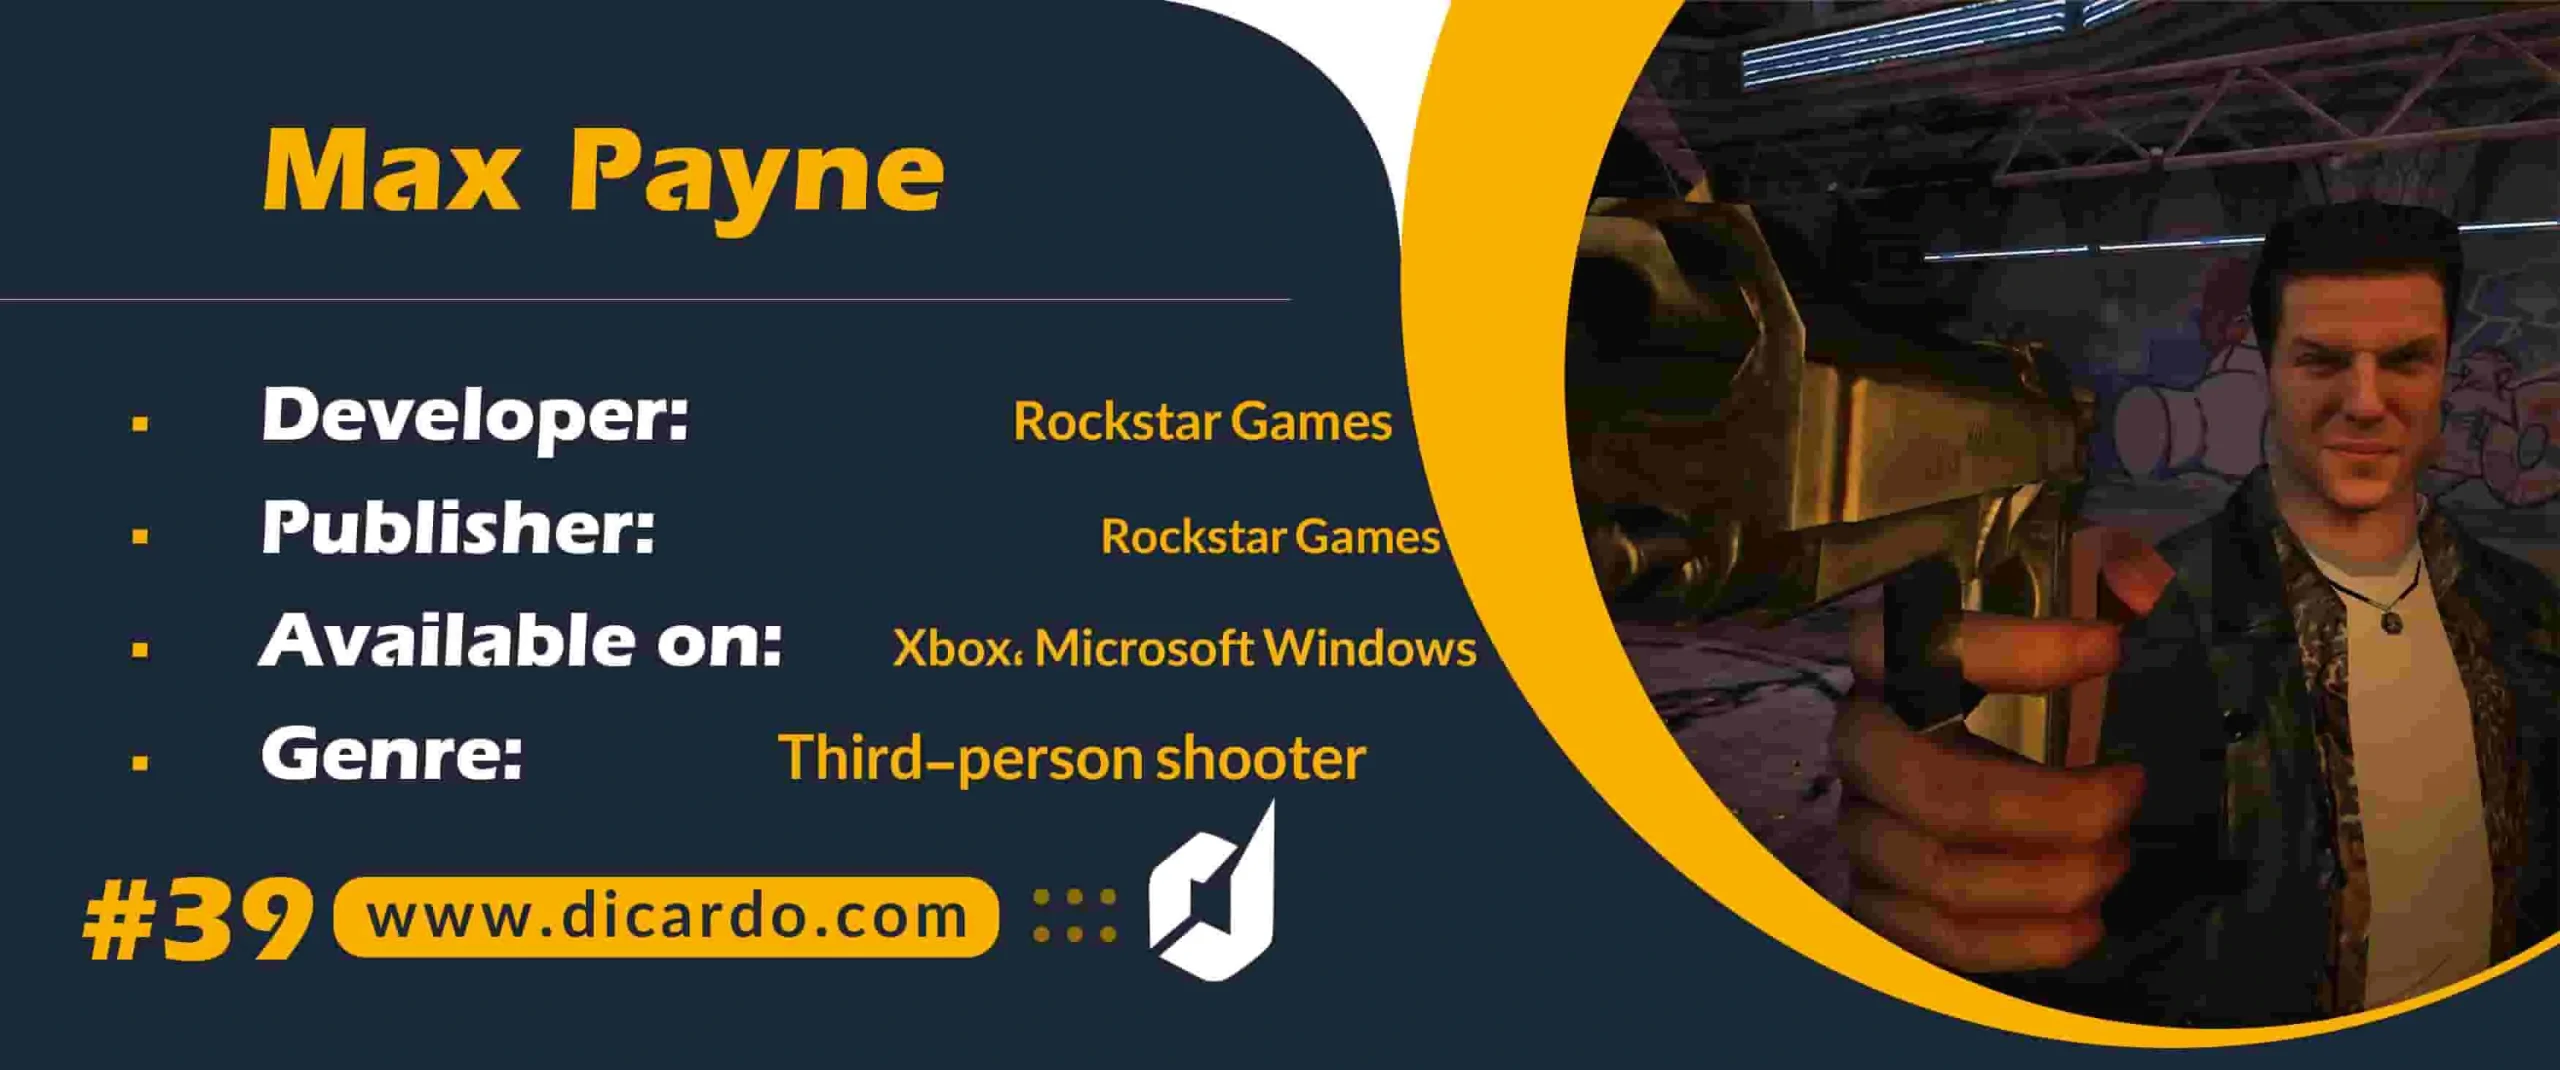 #39 مکس پین Max Payne از بهترین بازیهای ایکس باکس سوم شخص